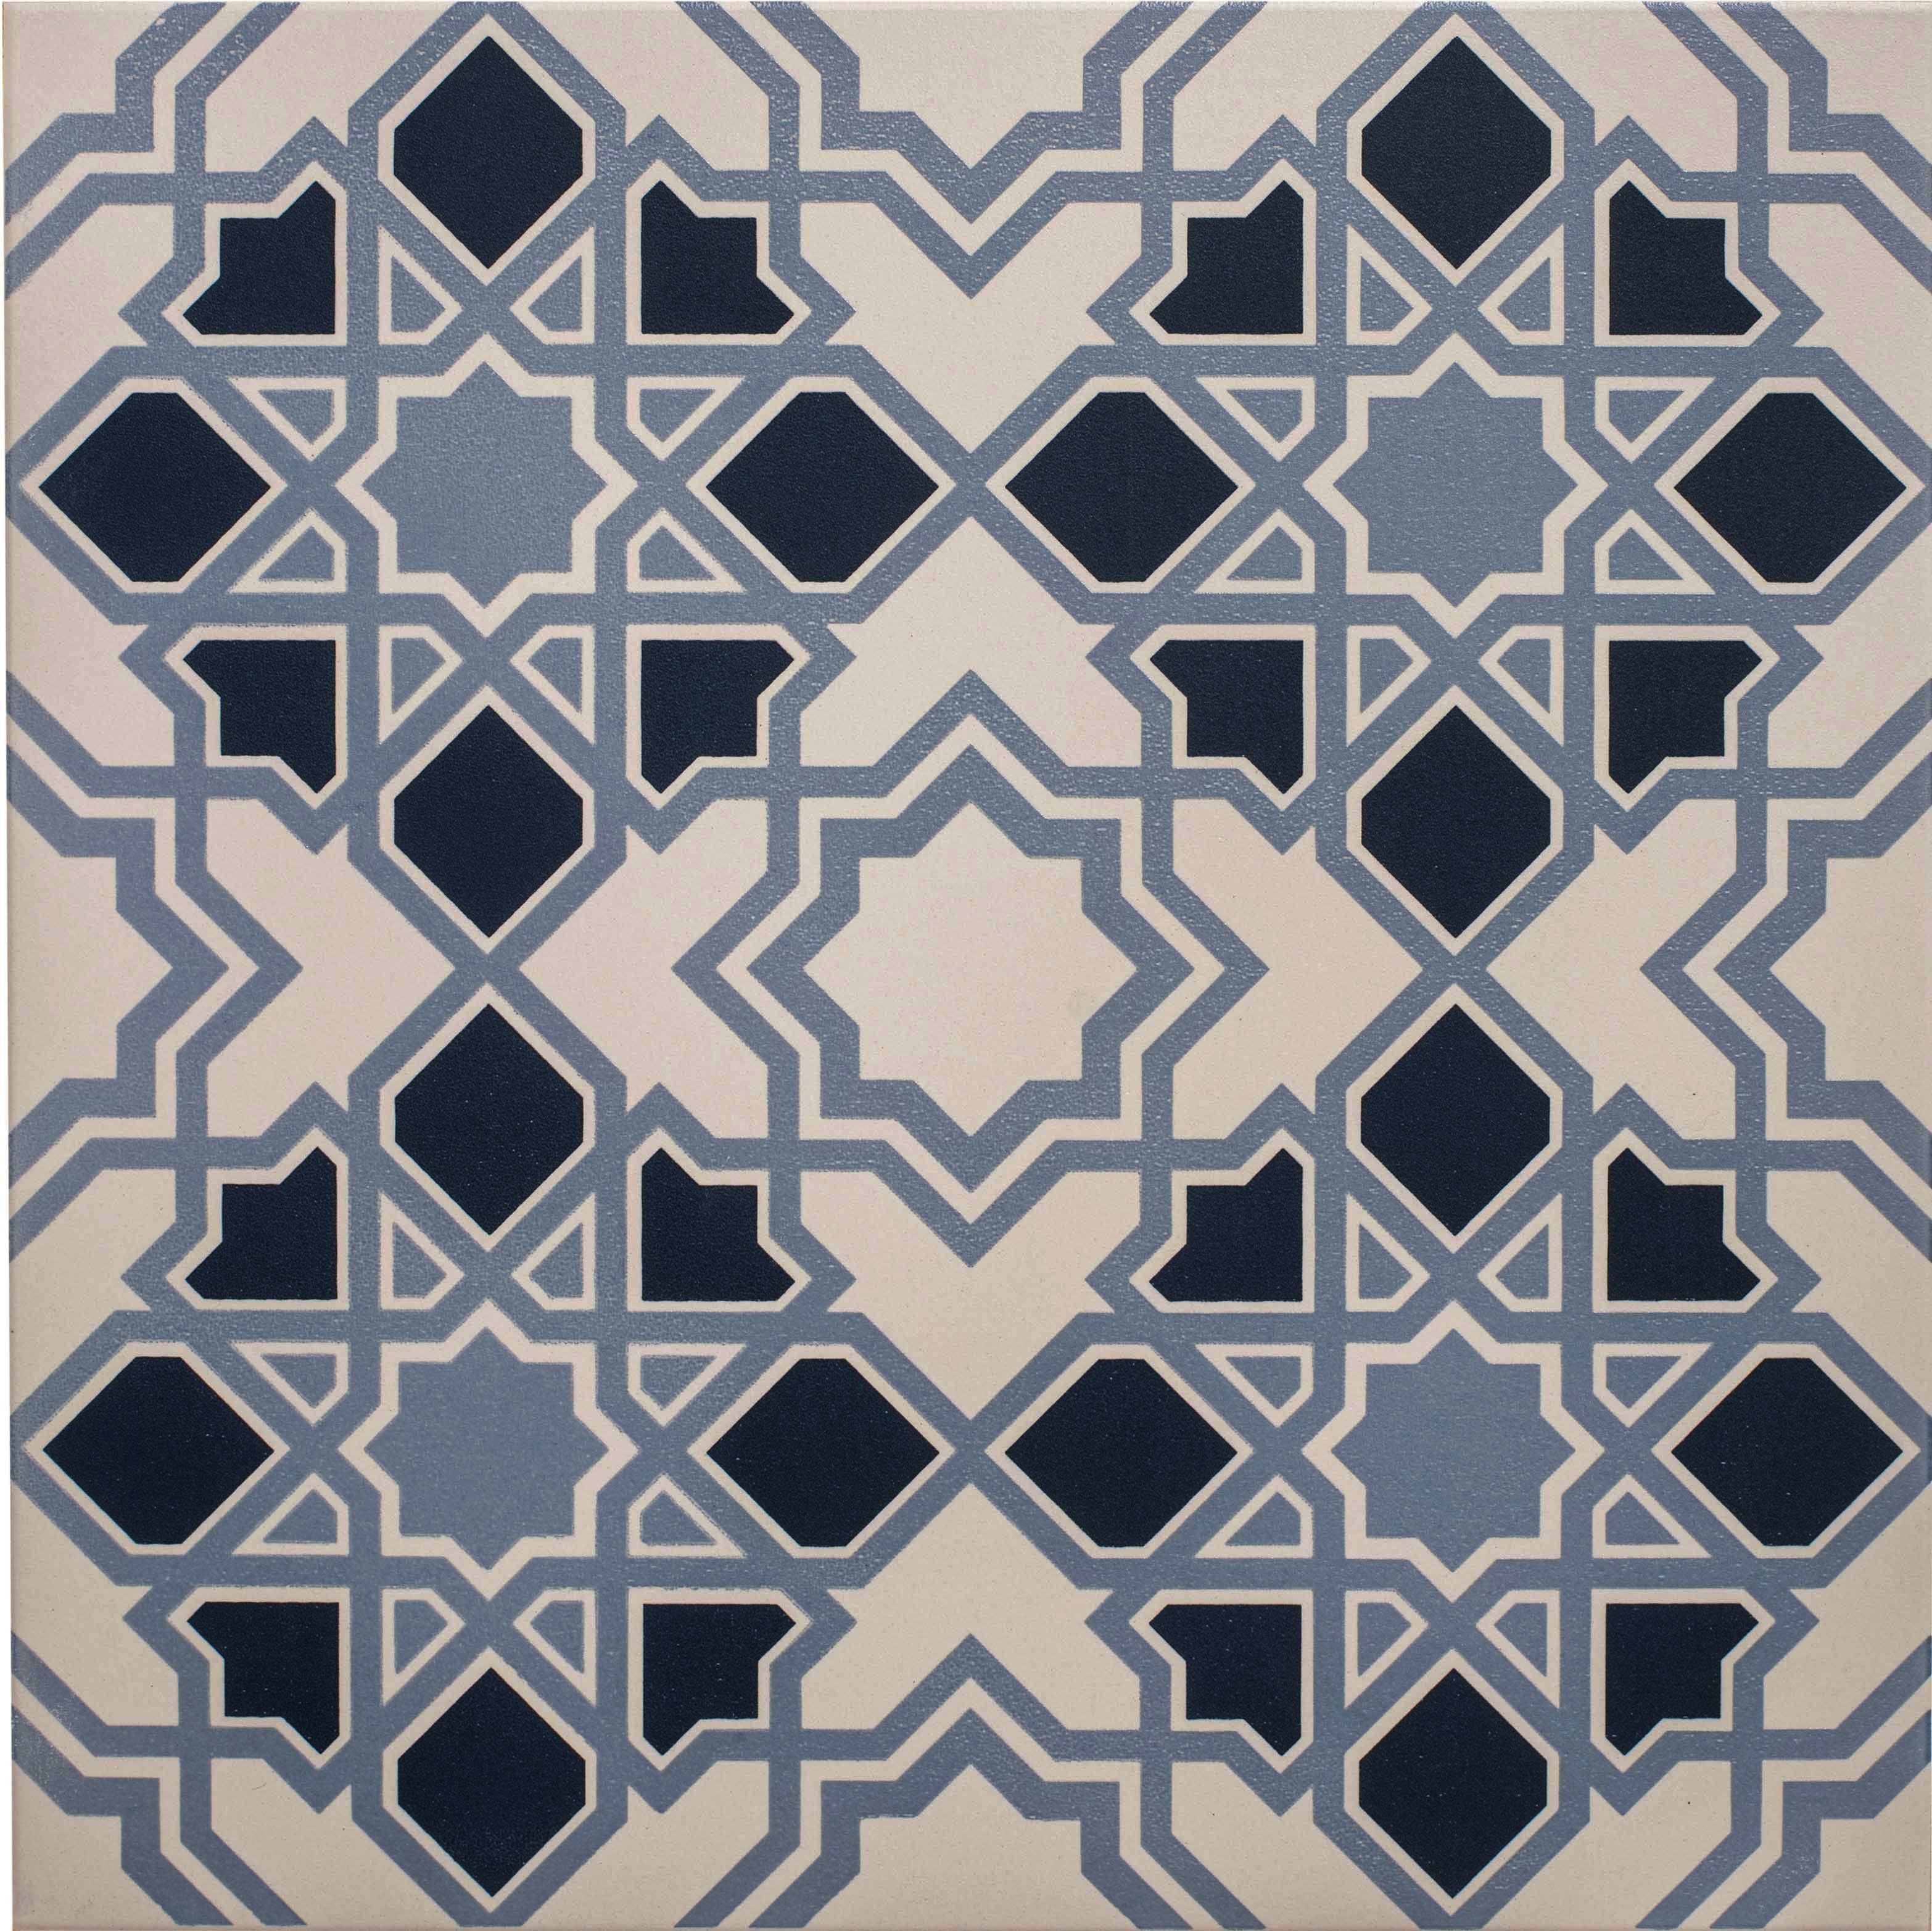 Bolero Light/Dark Blue on Chalk - Hyperion Tiles